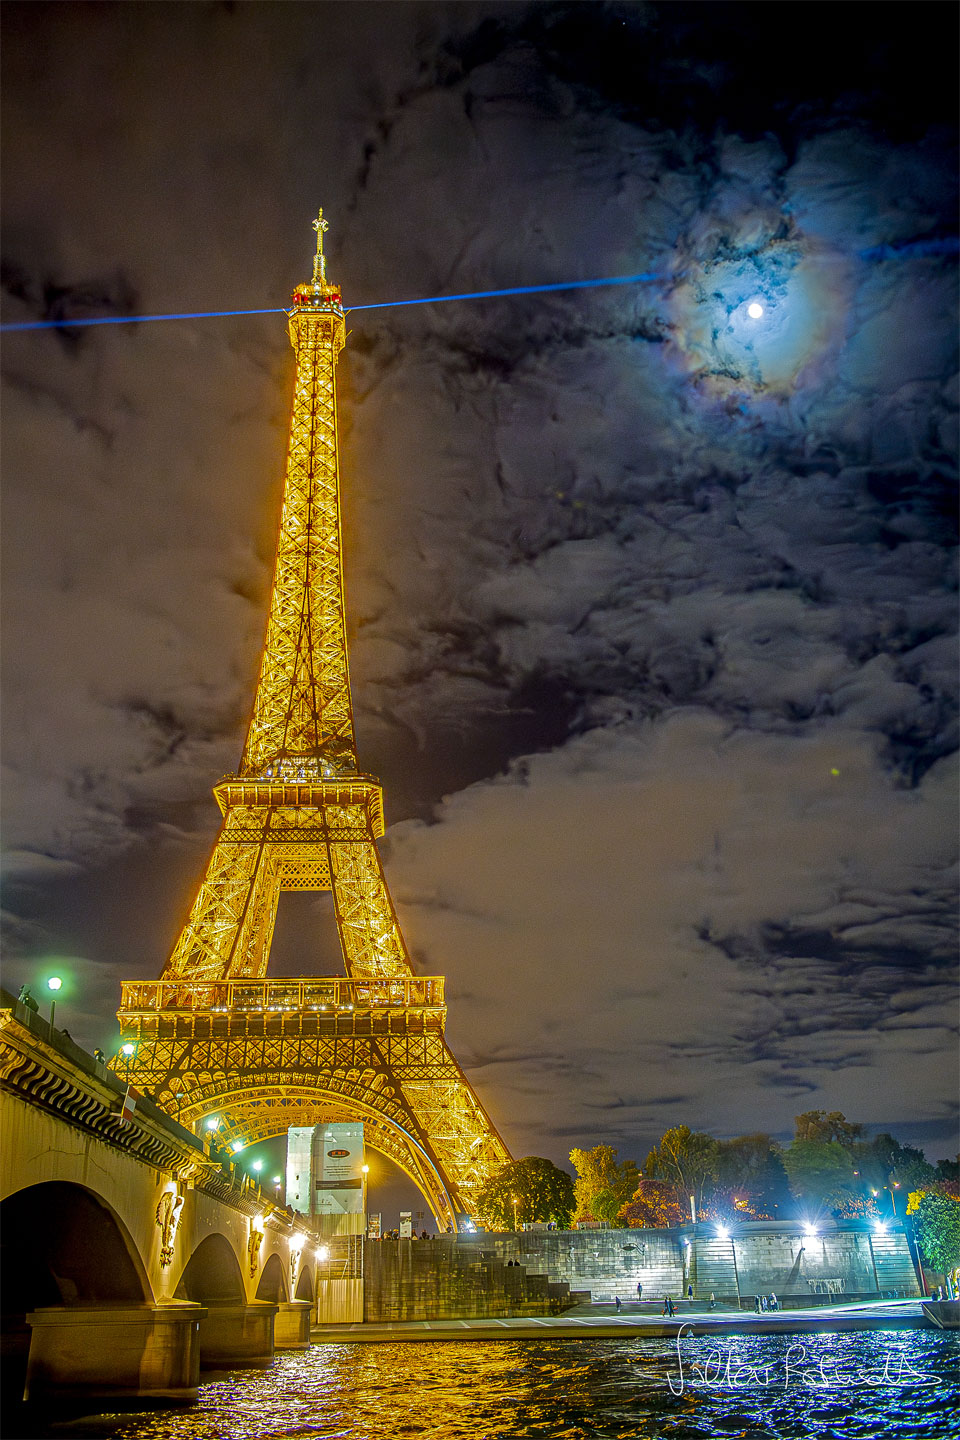 تاج قمری بر فراز پاریس